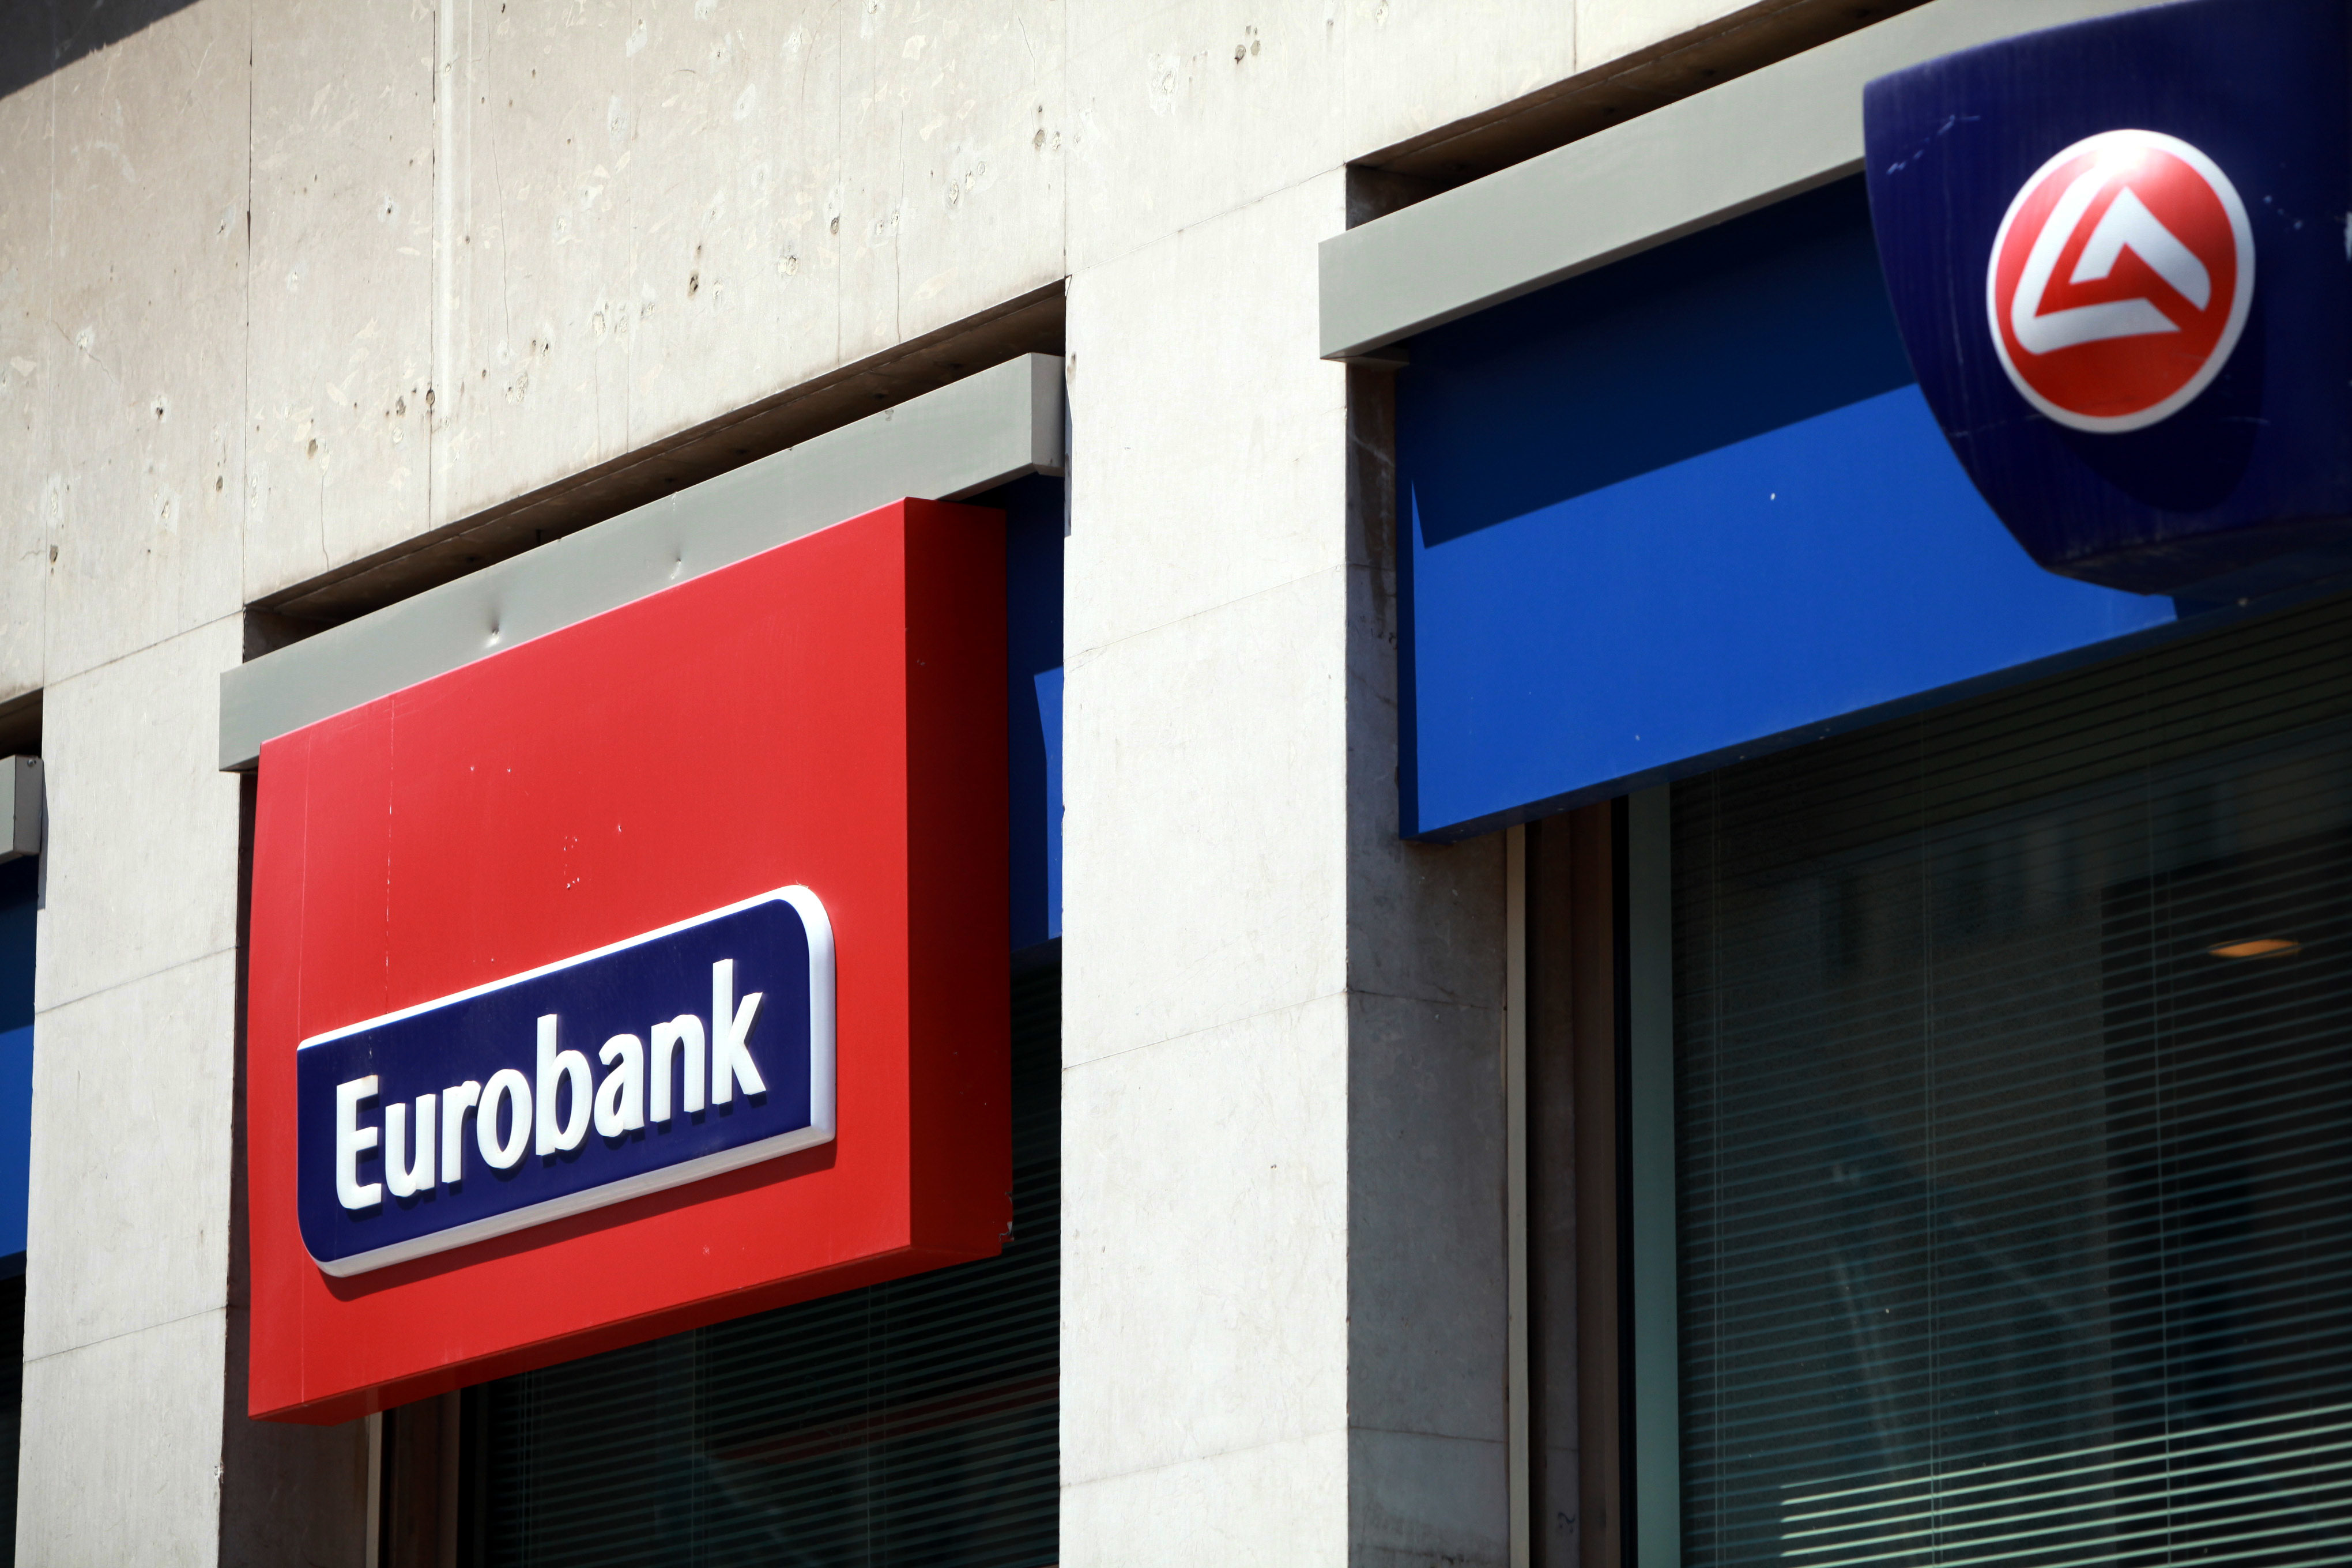 Eurobank: Θετική έκπληξη η μείωση του ΑΕΠ μόνο κατά -3,8% σε ετήσια βάση το δεύτερο τρίμηνο του 2013